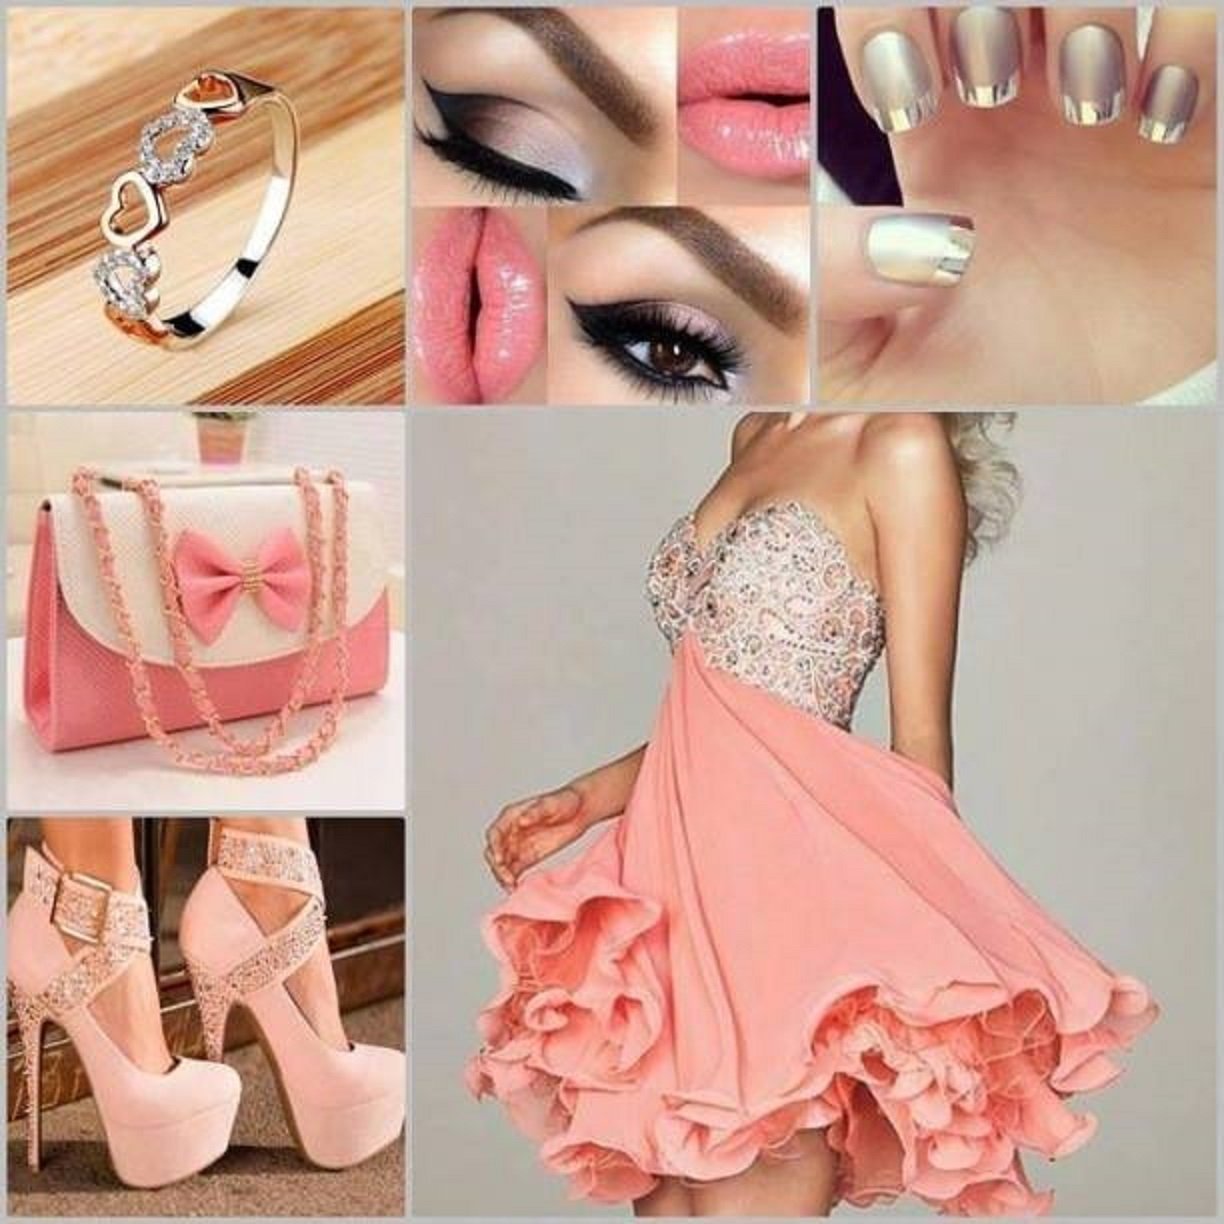 Туфли к розовому костюму. Маникюр к розовому платью. Бижутерия к розовому платью. Туфли к вечернему платью. Маникюр под розовое платье.